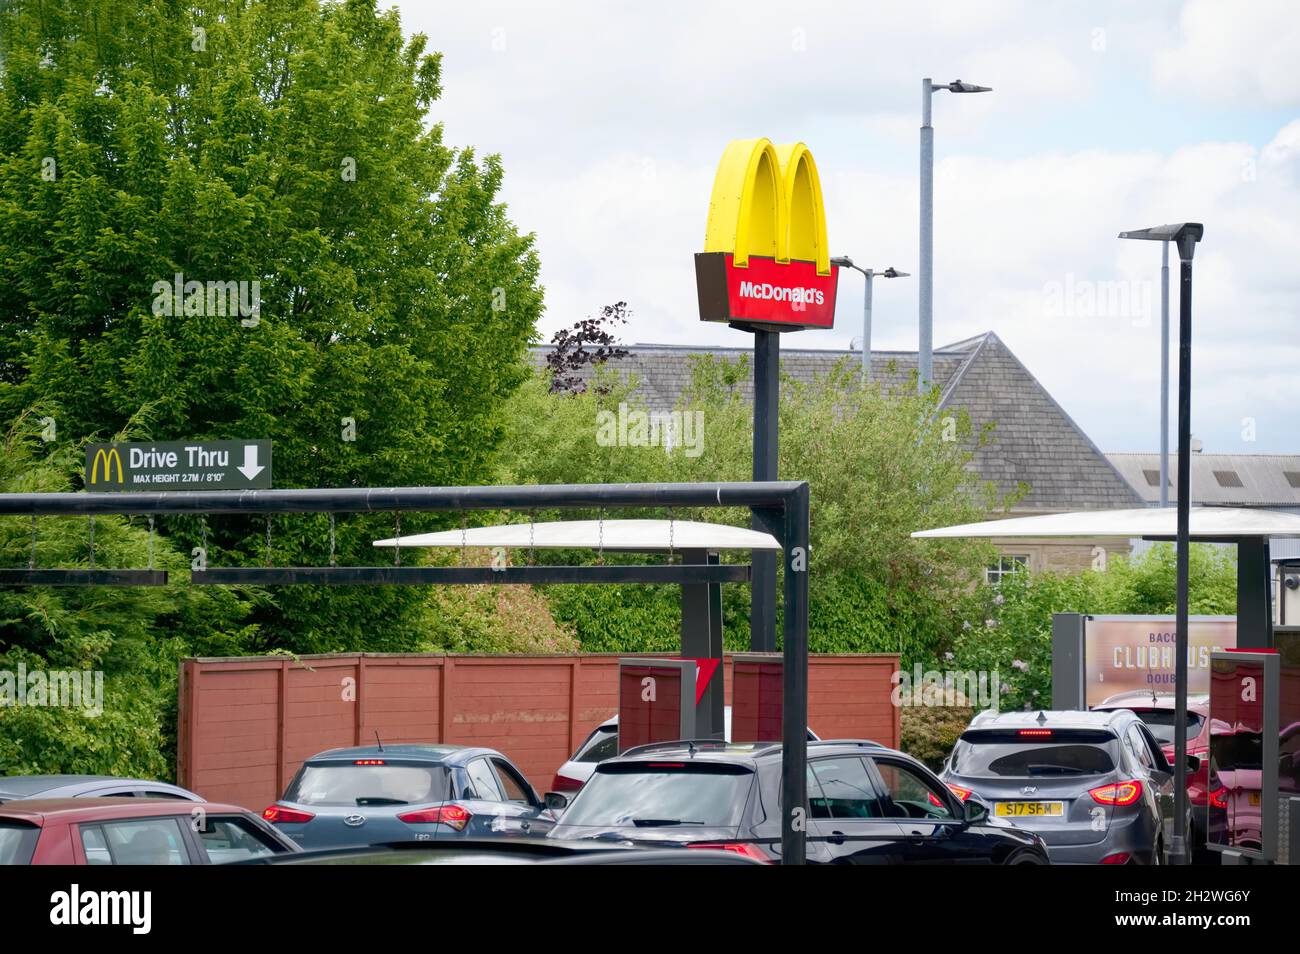 Londres, Angleterre, Royaume-Uni - 6 juin 2021 : McDonalds passe par le confinement du restaurant en raison de Covid-19 Banque D'Images